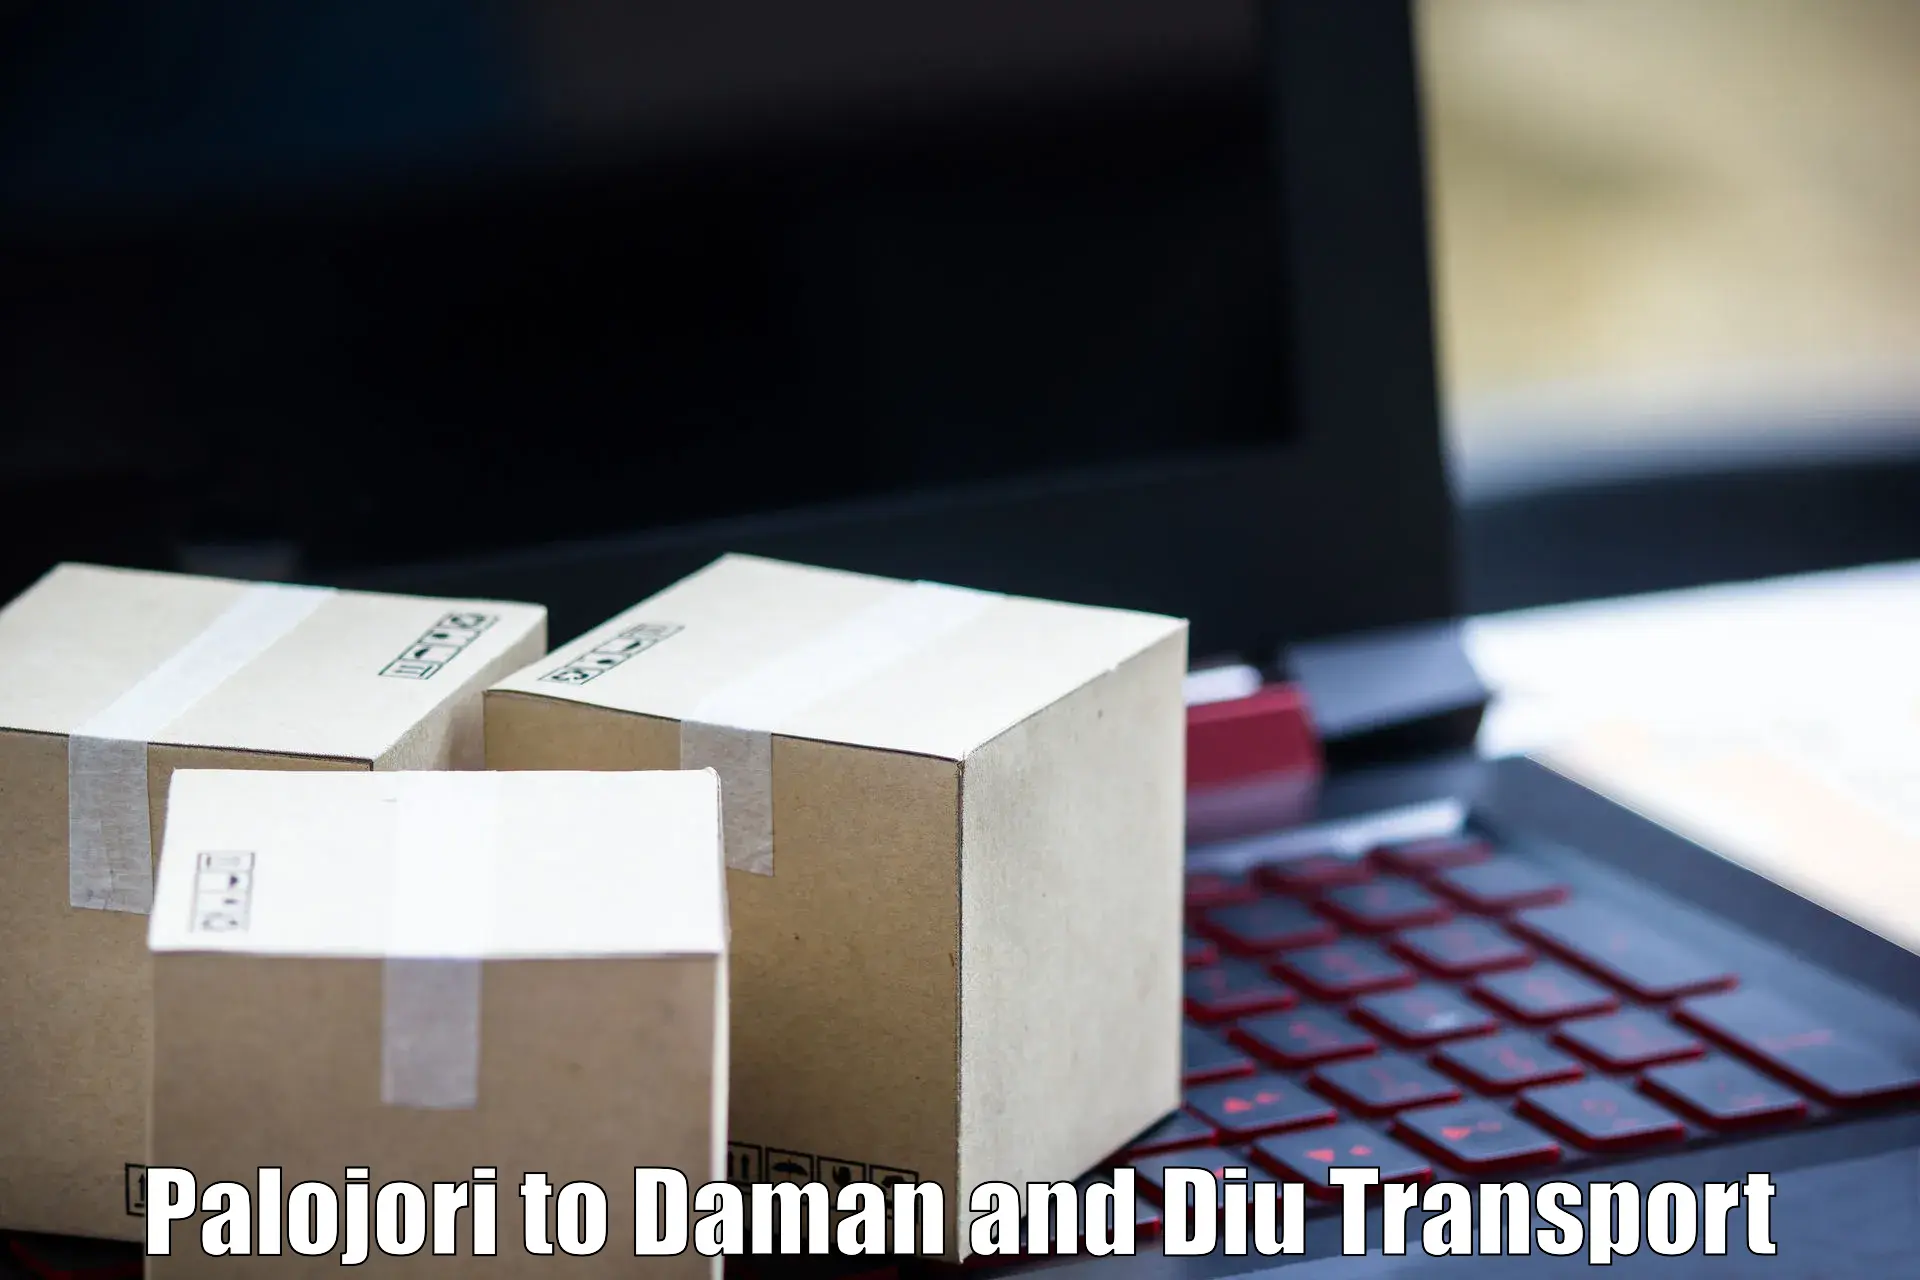 Online transport booking in Palojori to Daman